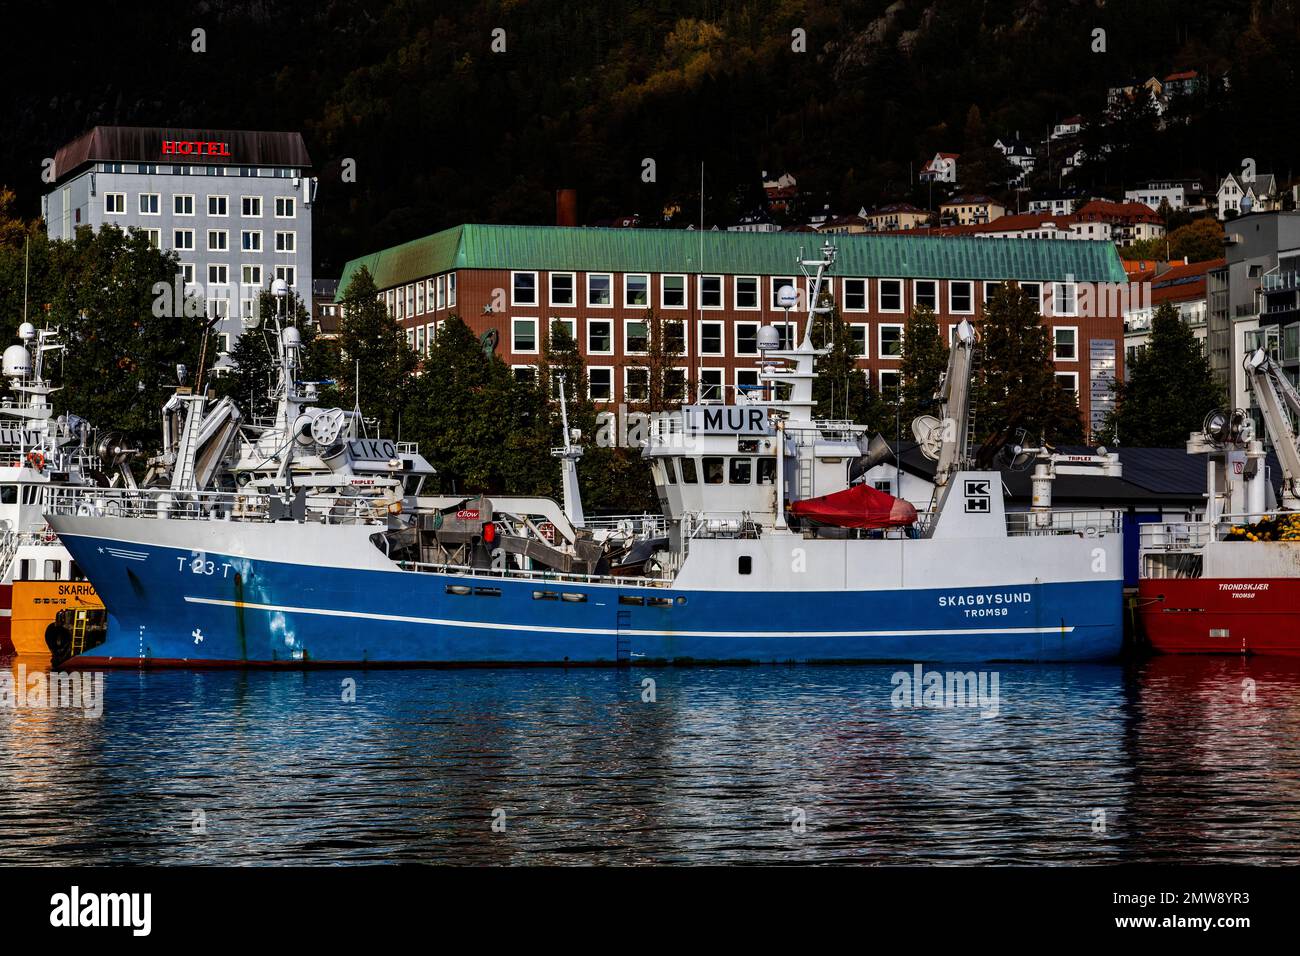 Fischereifahrzeug Skagoysund (Skagøysund) am Bradbenken-Kai im Hafen Bergen, Norwegen. Stockfoto